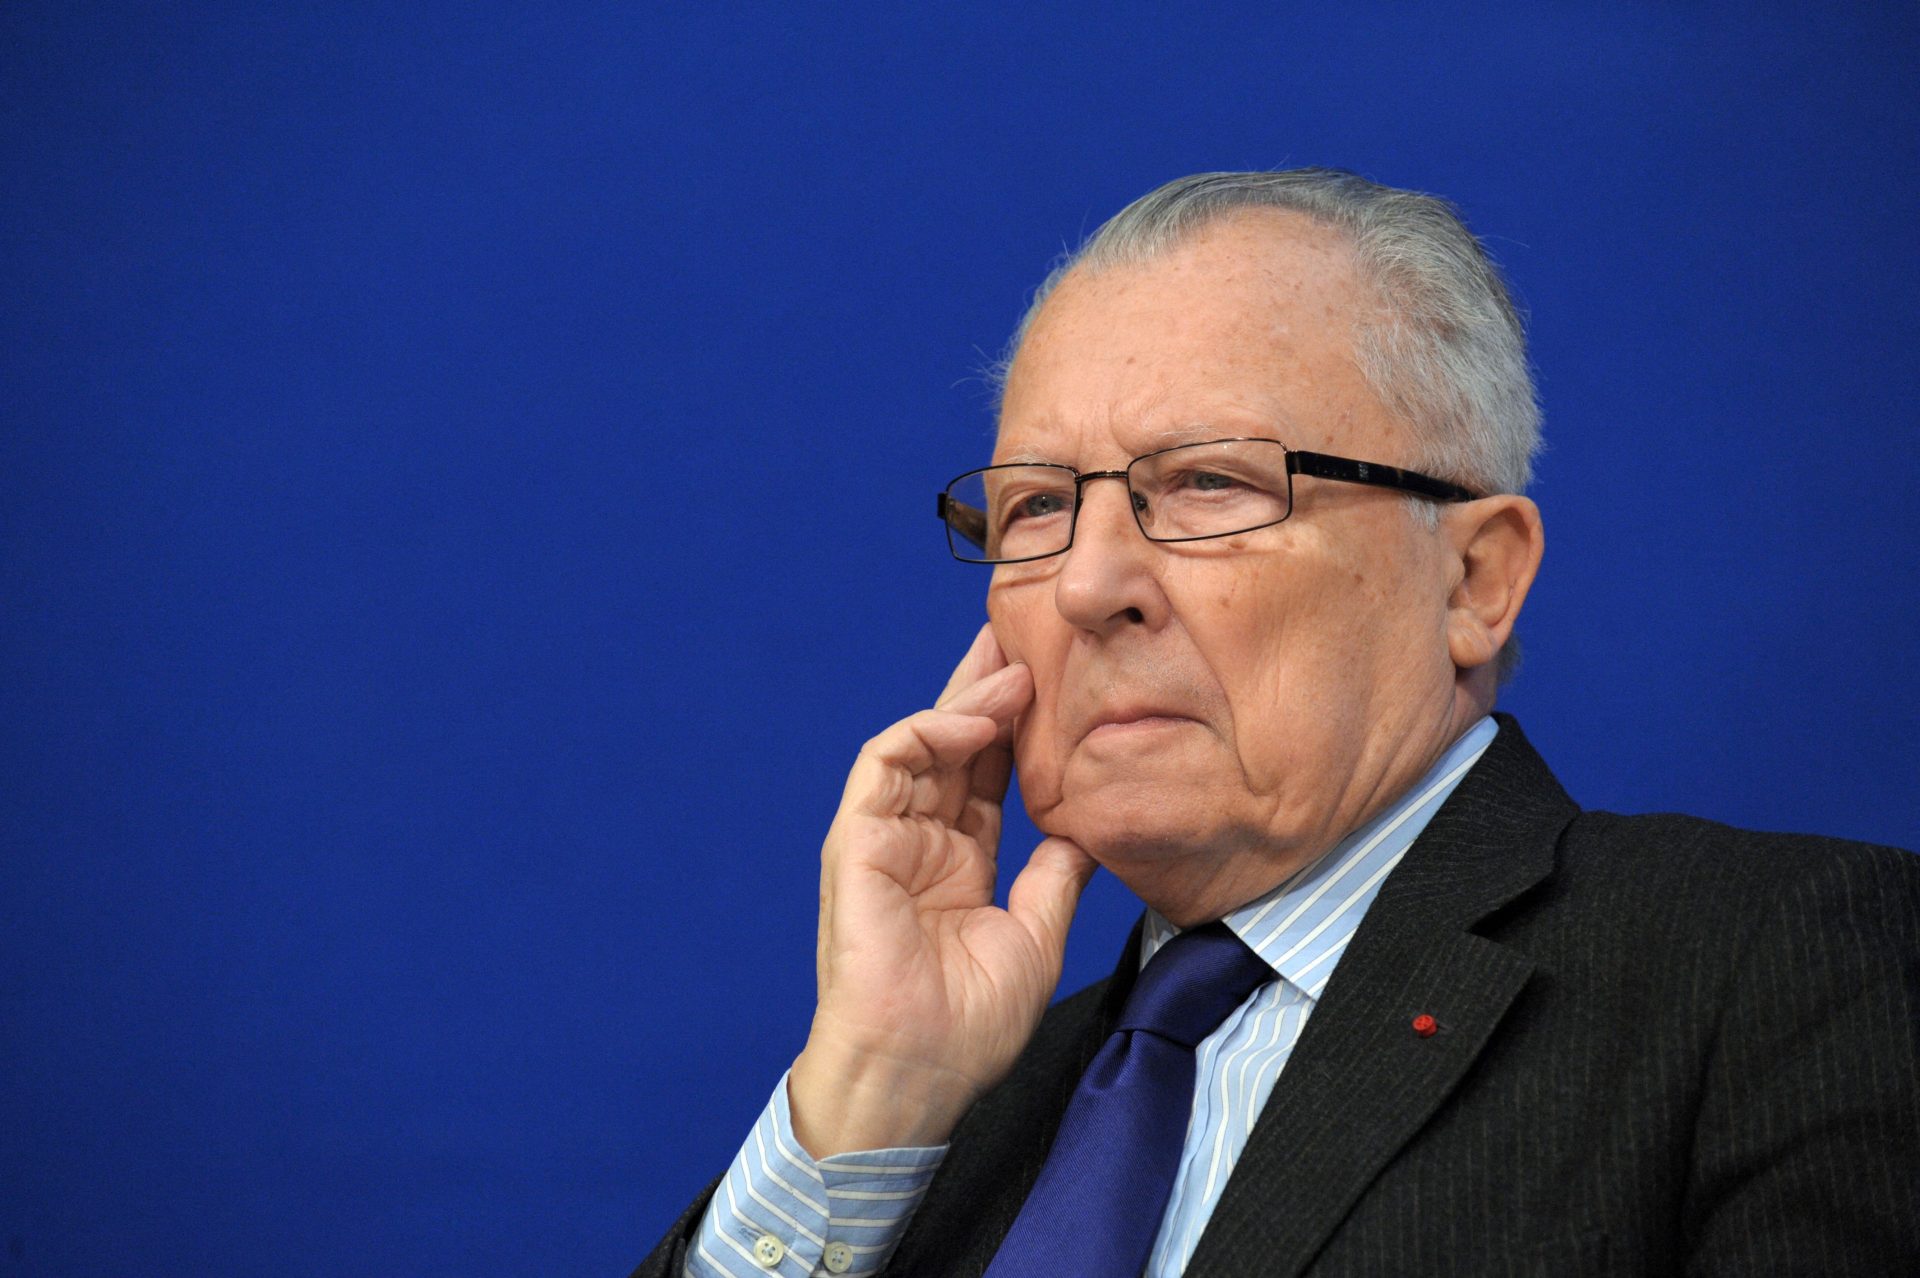 Morreu o antigo presidente da Comissão Europeia Jaques Delors